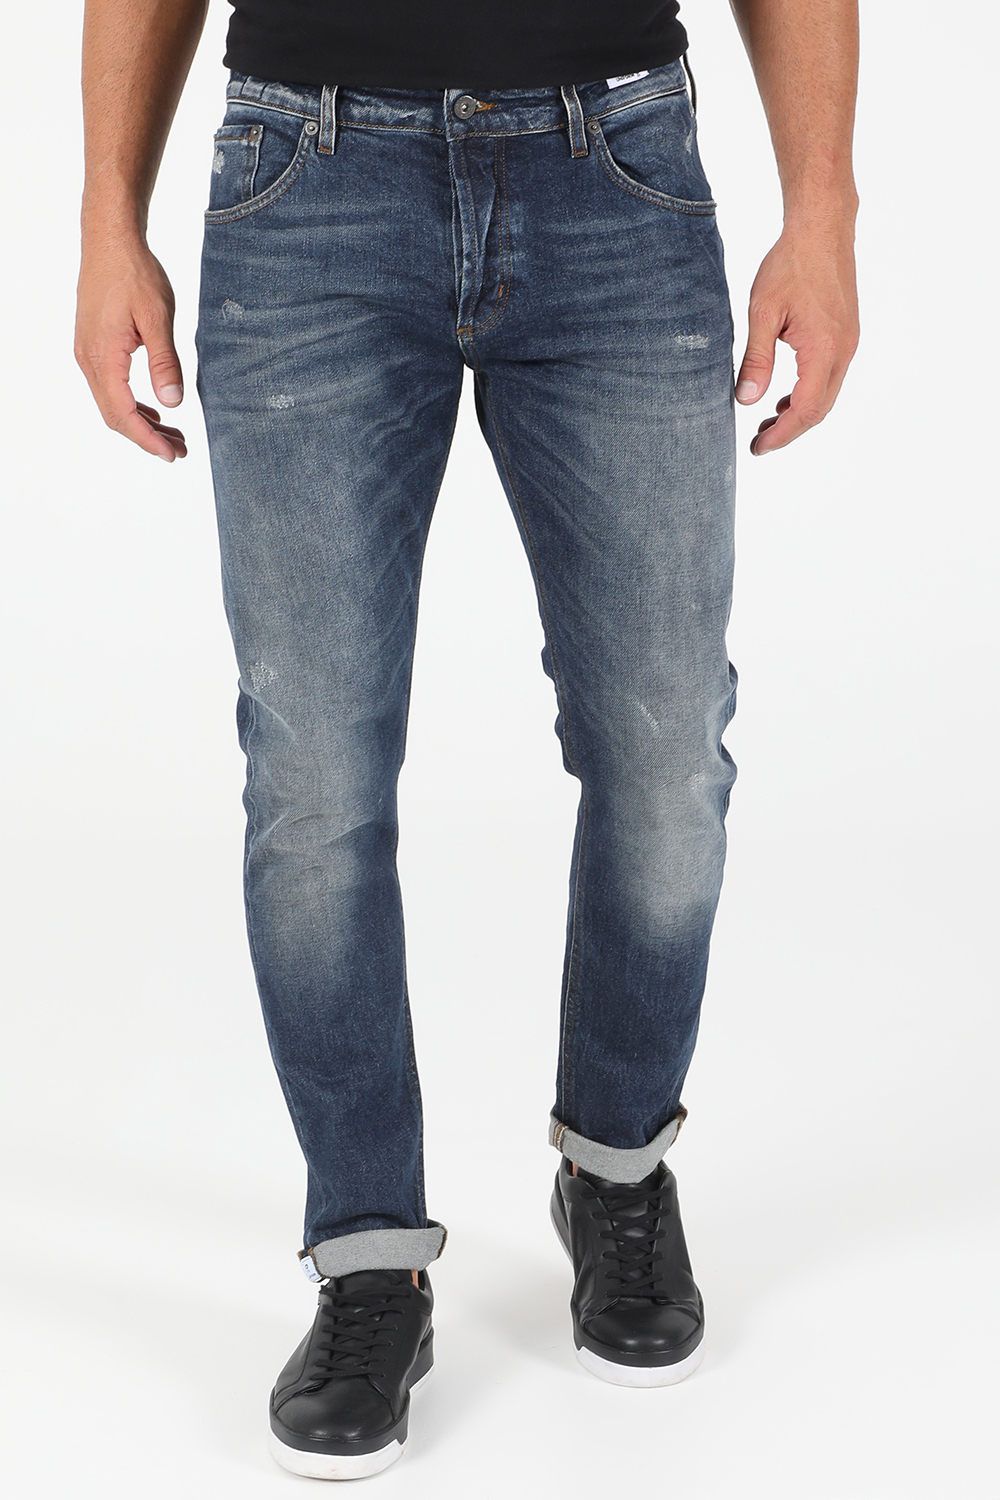 Ανδρικά/Ρούχα/Τζίν/Straight UNIFORM - Ανδρικό jean παντελόνι UNIFORM BARNEY μπλε